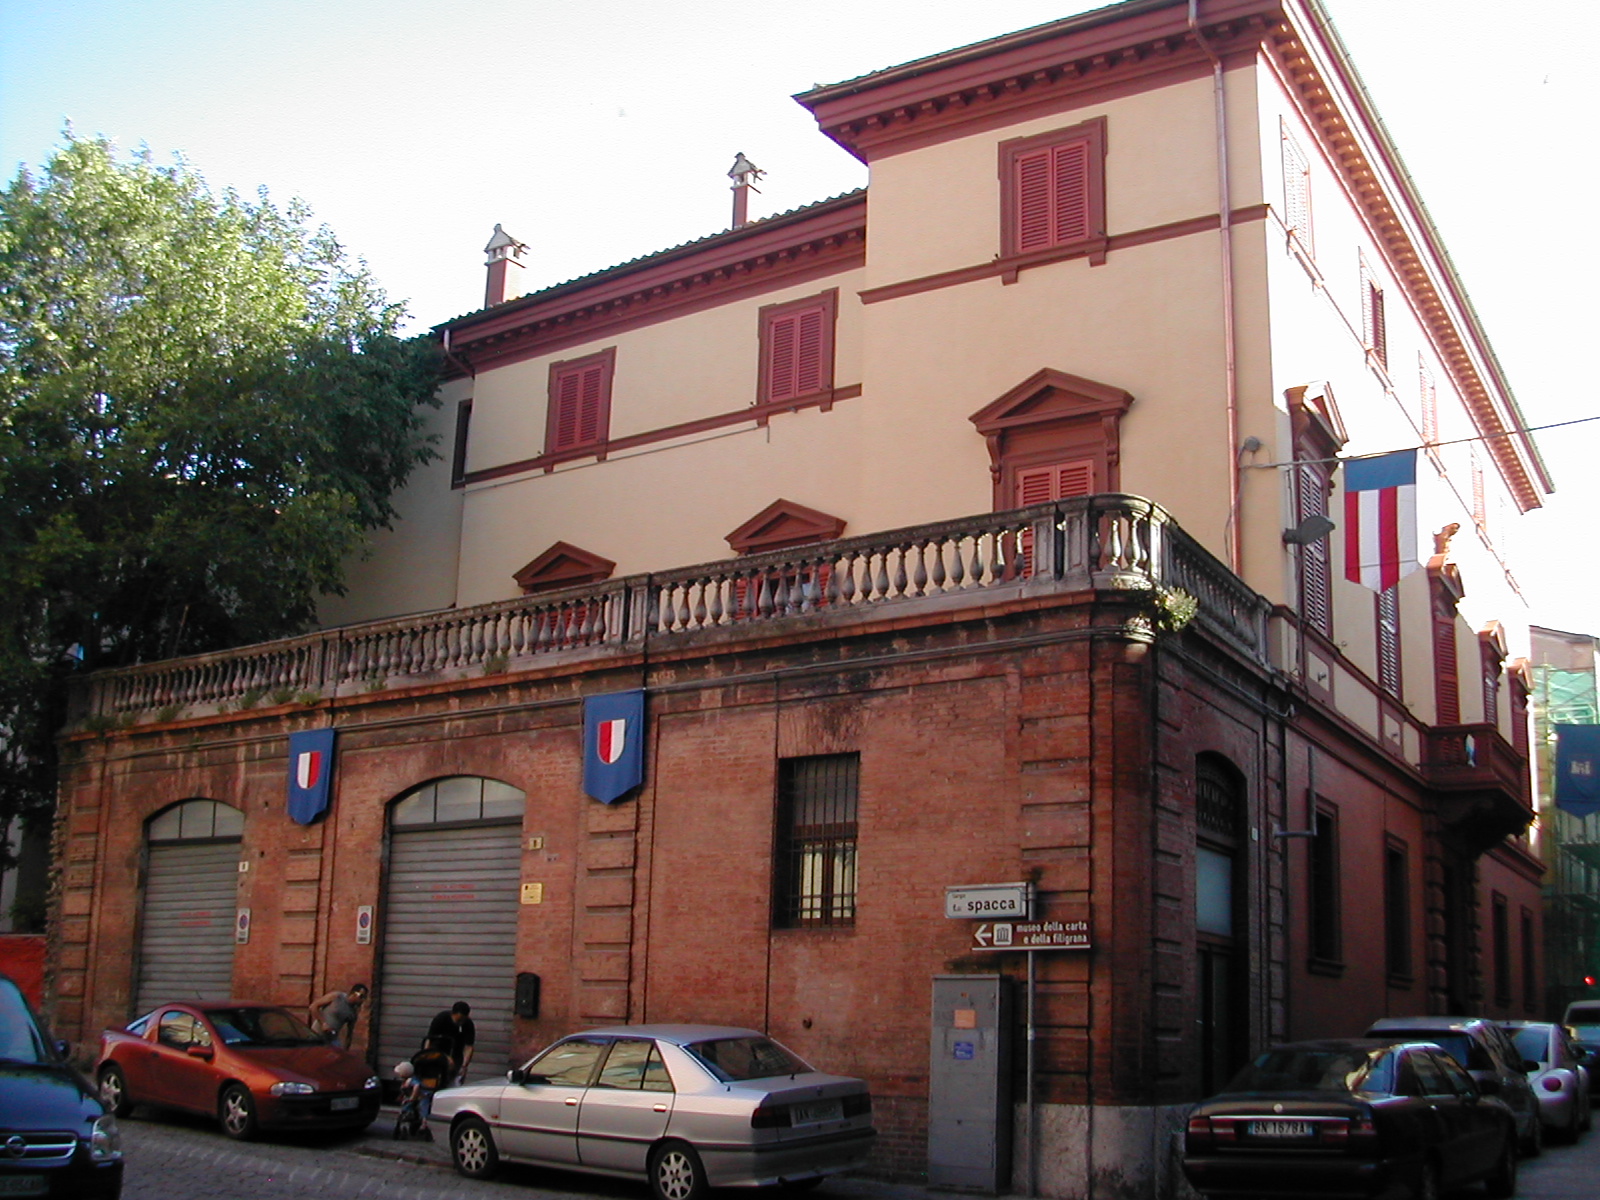 Palazzo Malvaioli (palazzo, signorile) - Fabriano (AN) 